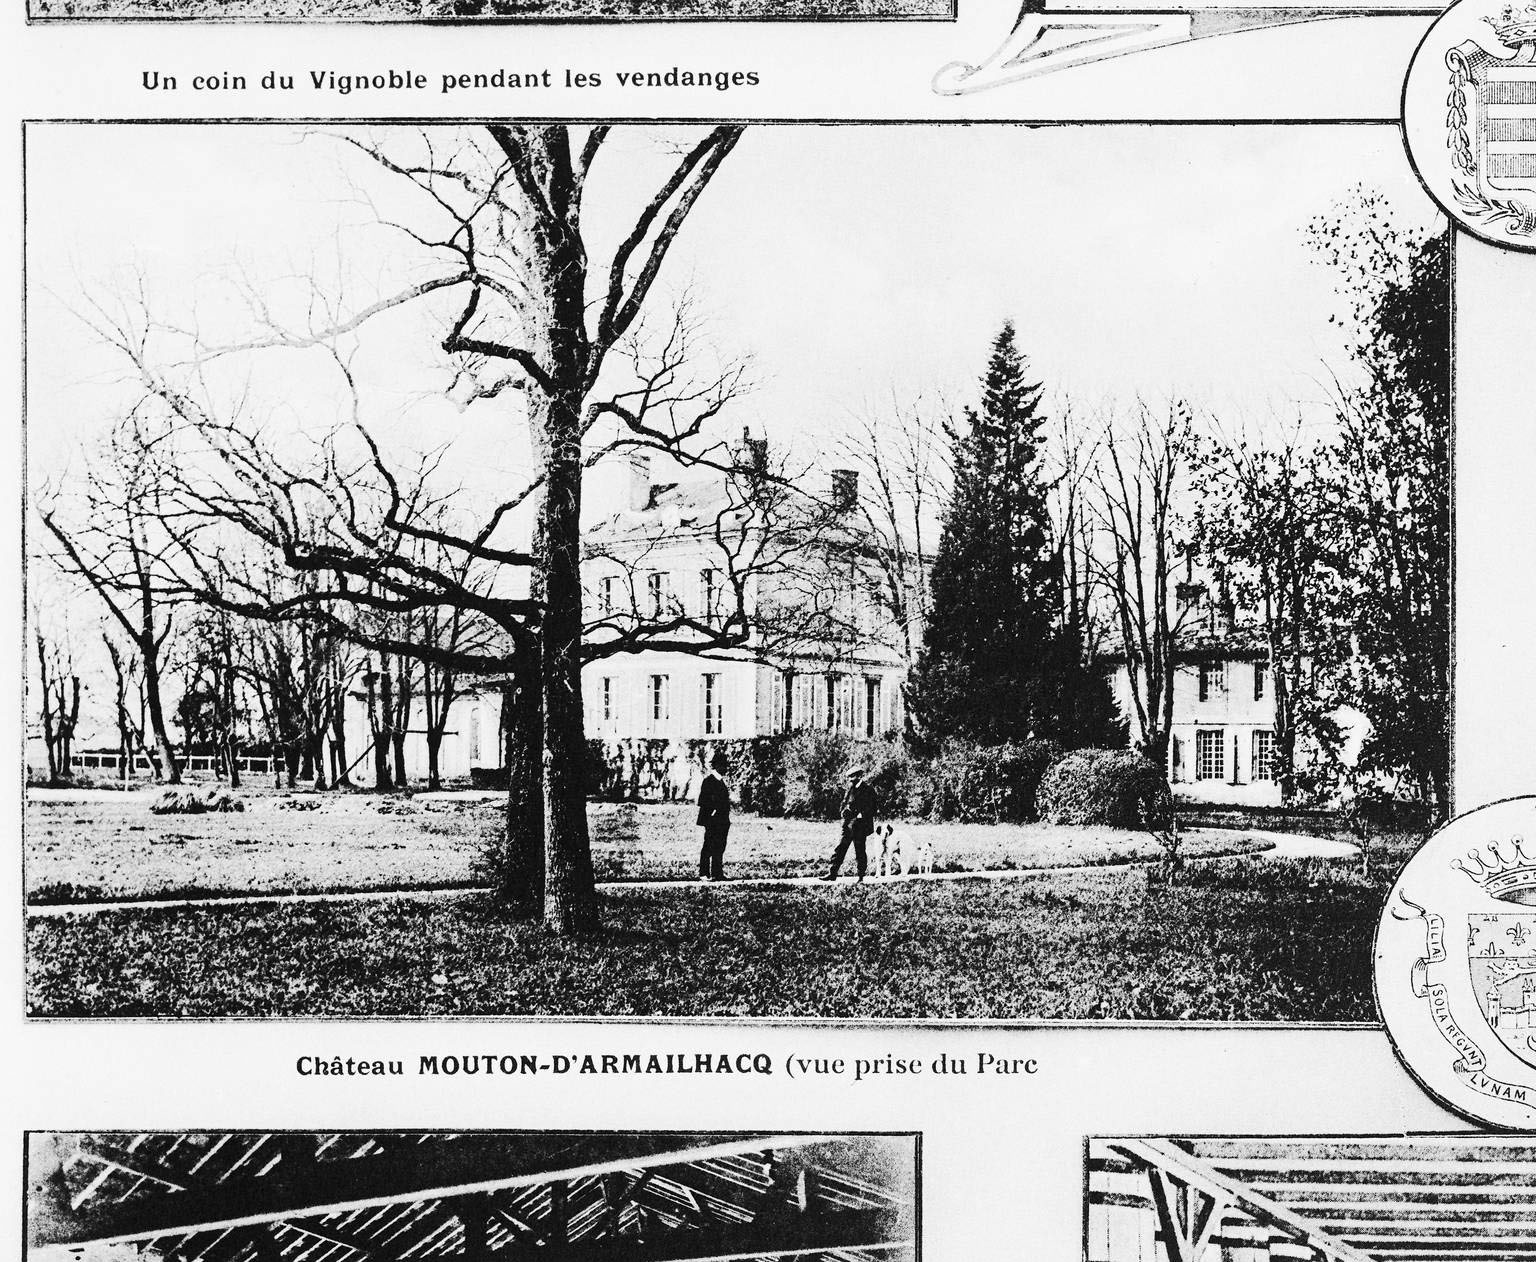 Planche photographique de l'album d'Henry Guillier (1er quart 20e siècle), détail : vue depuis le parc.